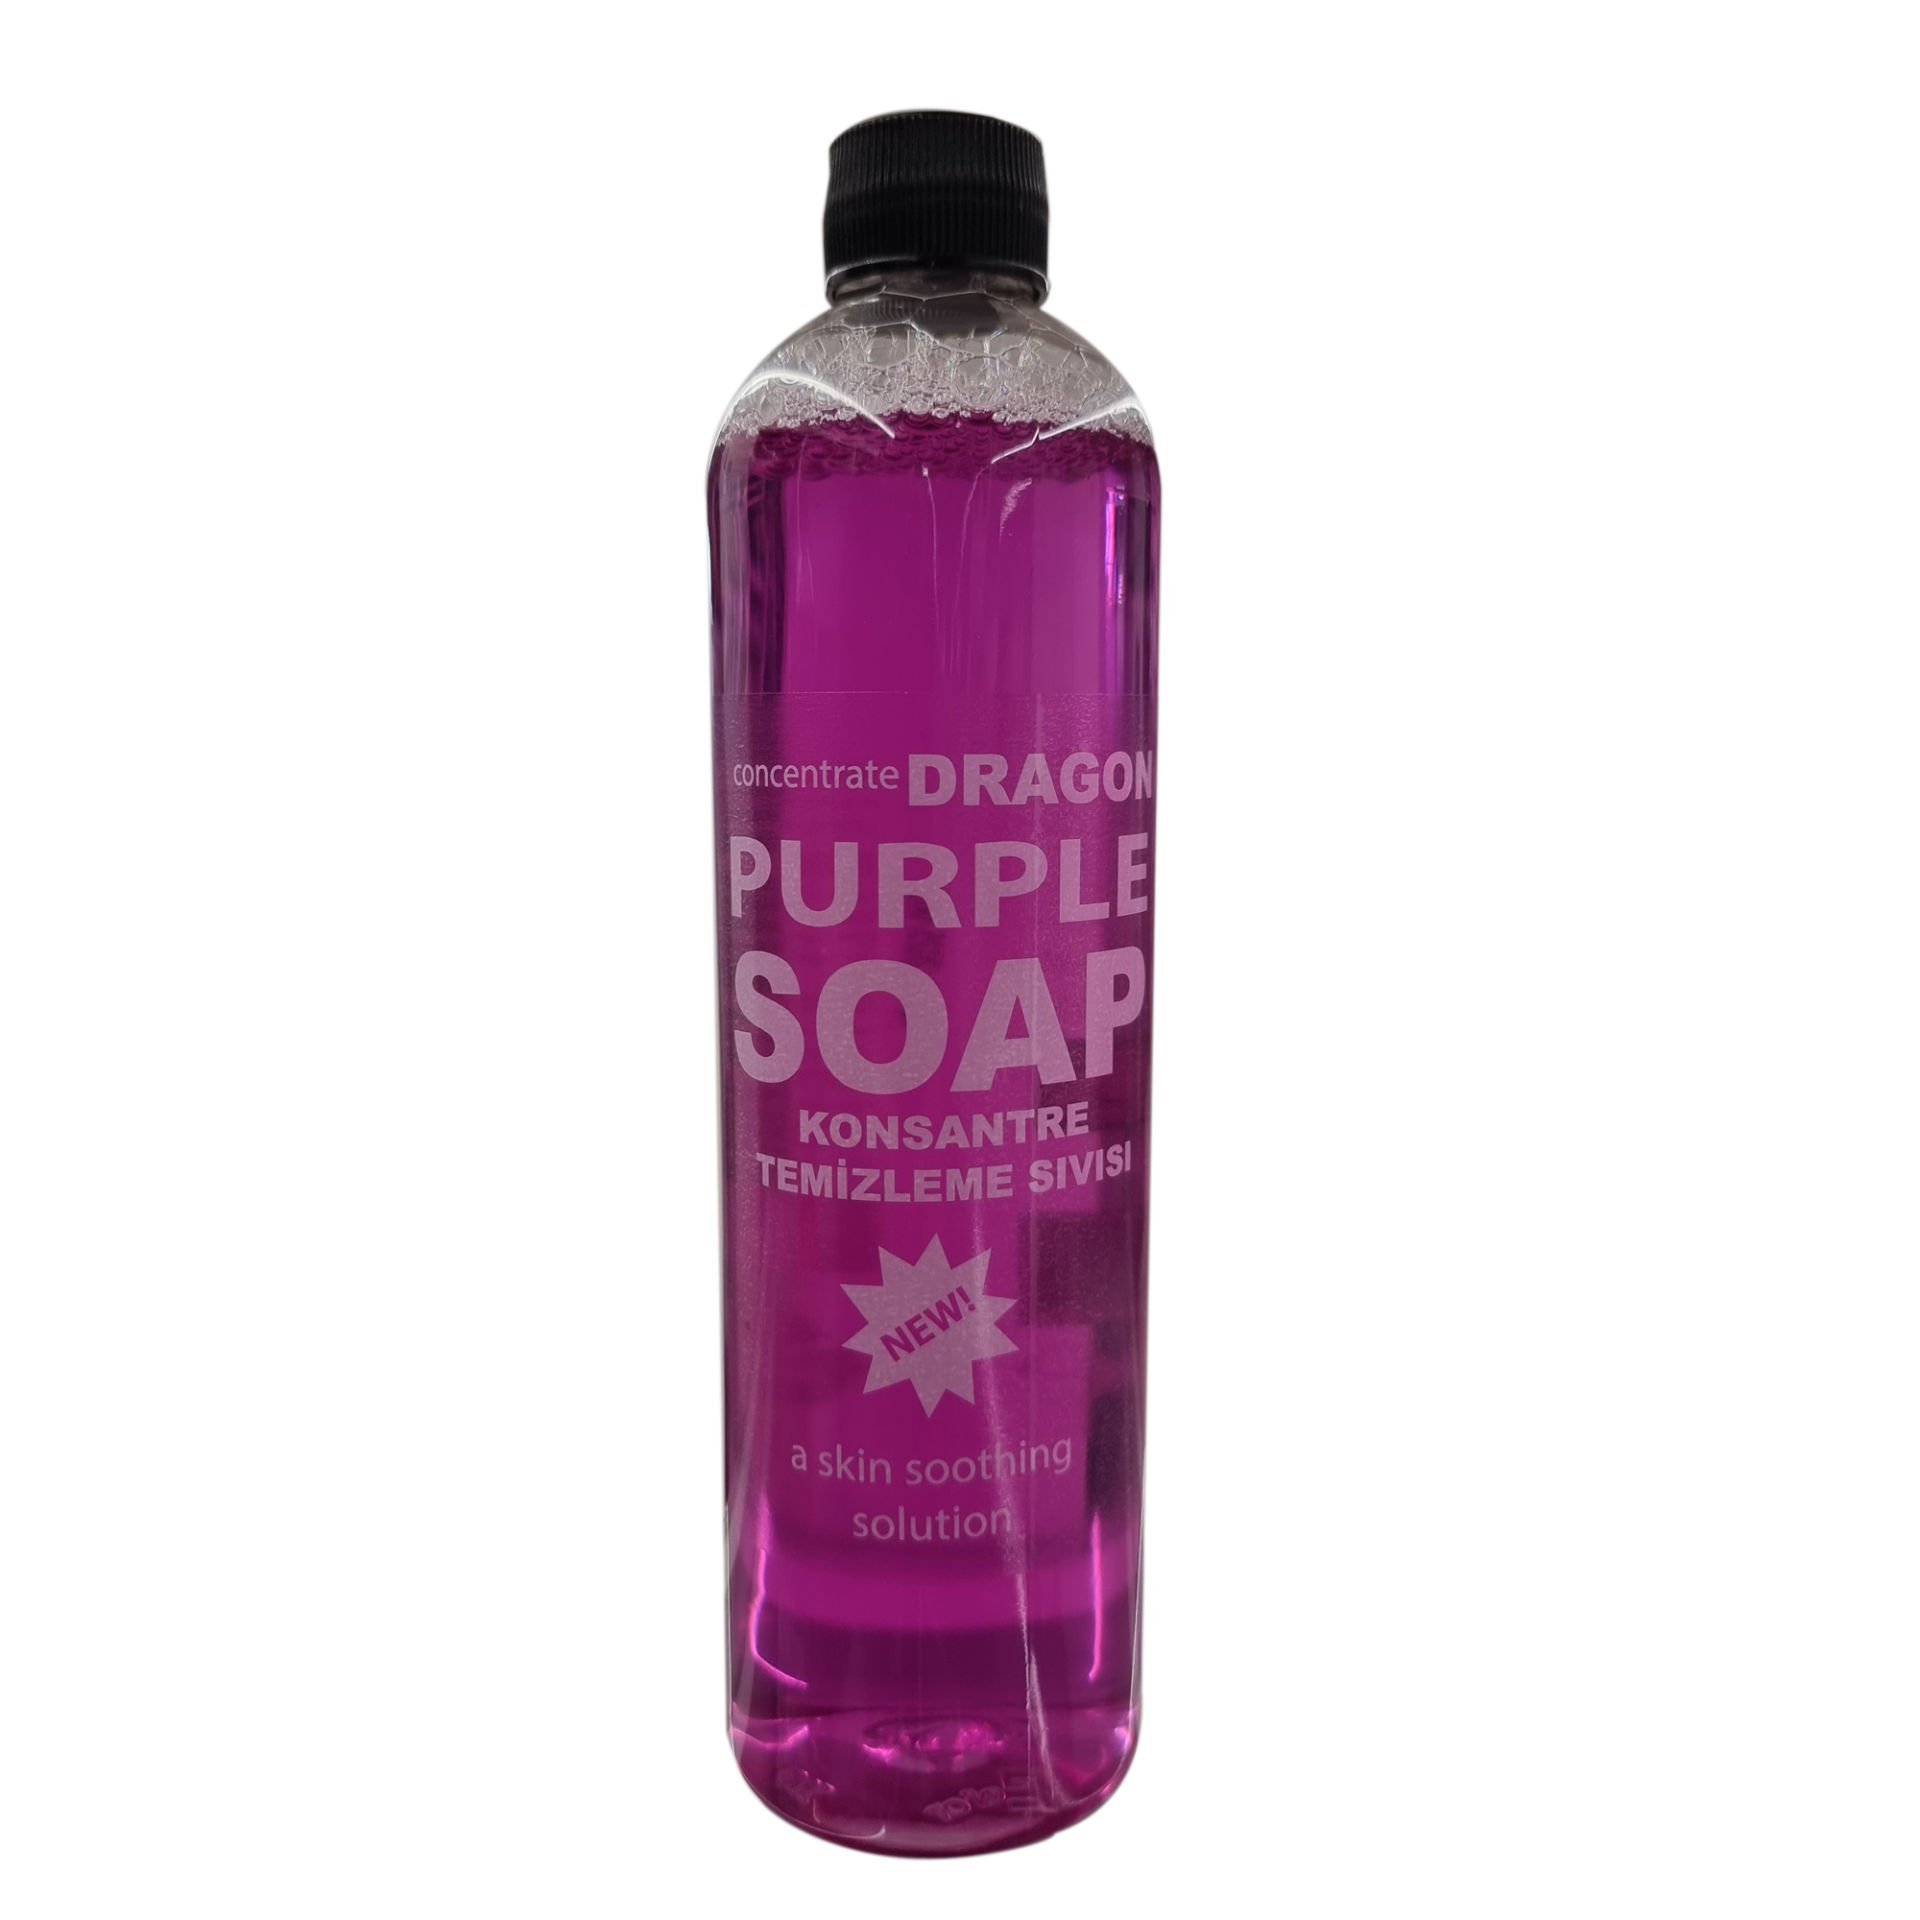 Dragon Purple Soap Konsantre Cilt Temizleme Sıvısı 400ml (Dövme, Kalıcı Makyaj, Microblading) Mor Sabun Su Tattoo Clean